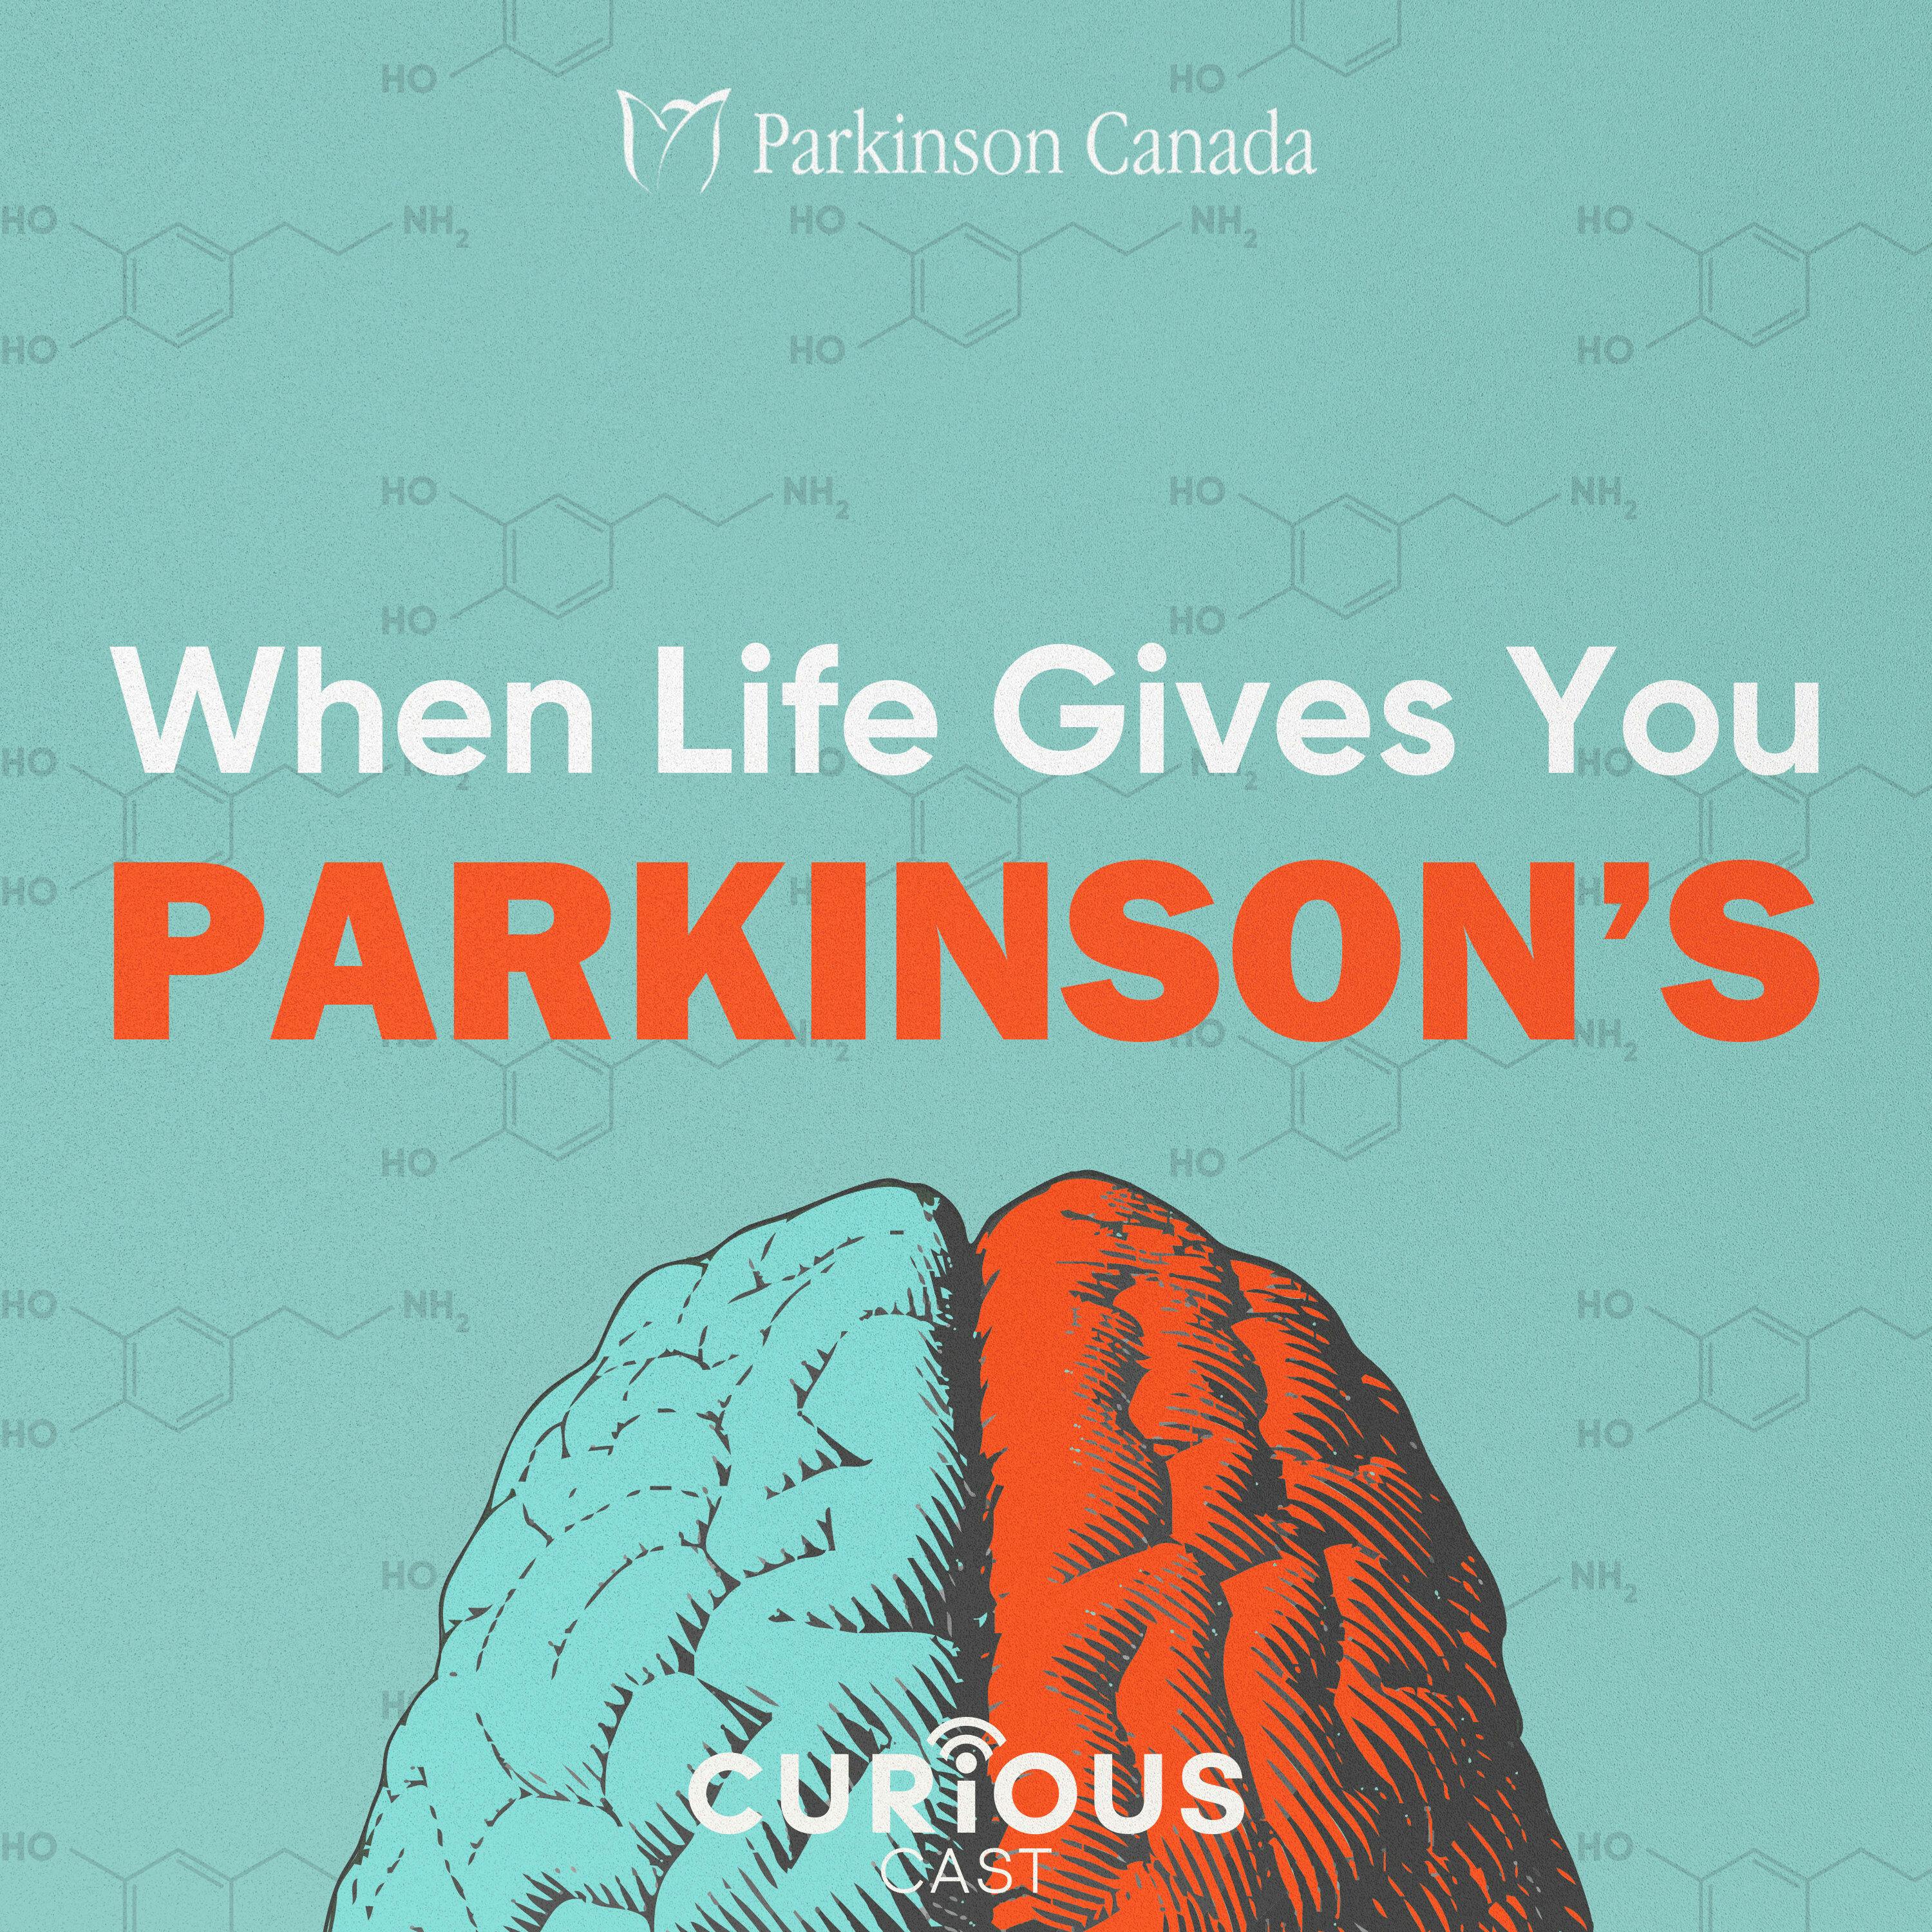 Parkinson’s is a family affair | 7